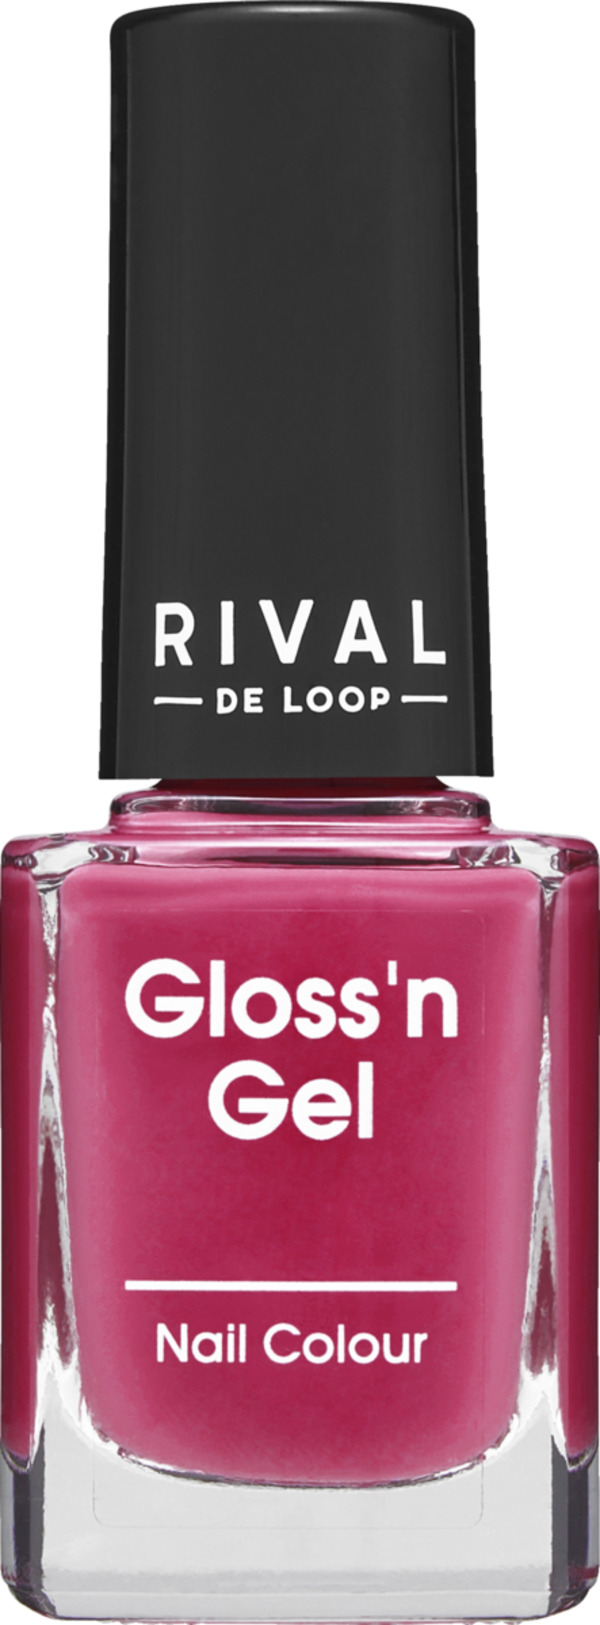 Bild 1 von RIVAL DE LOOP Gloss'n Gel Nail Colour 14